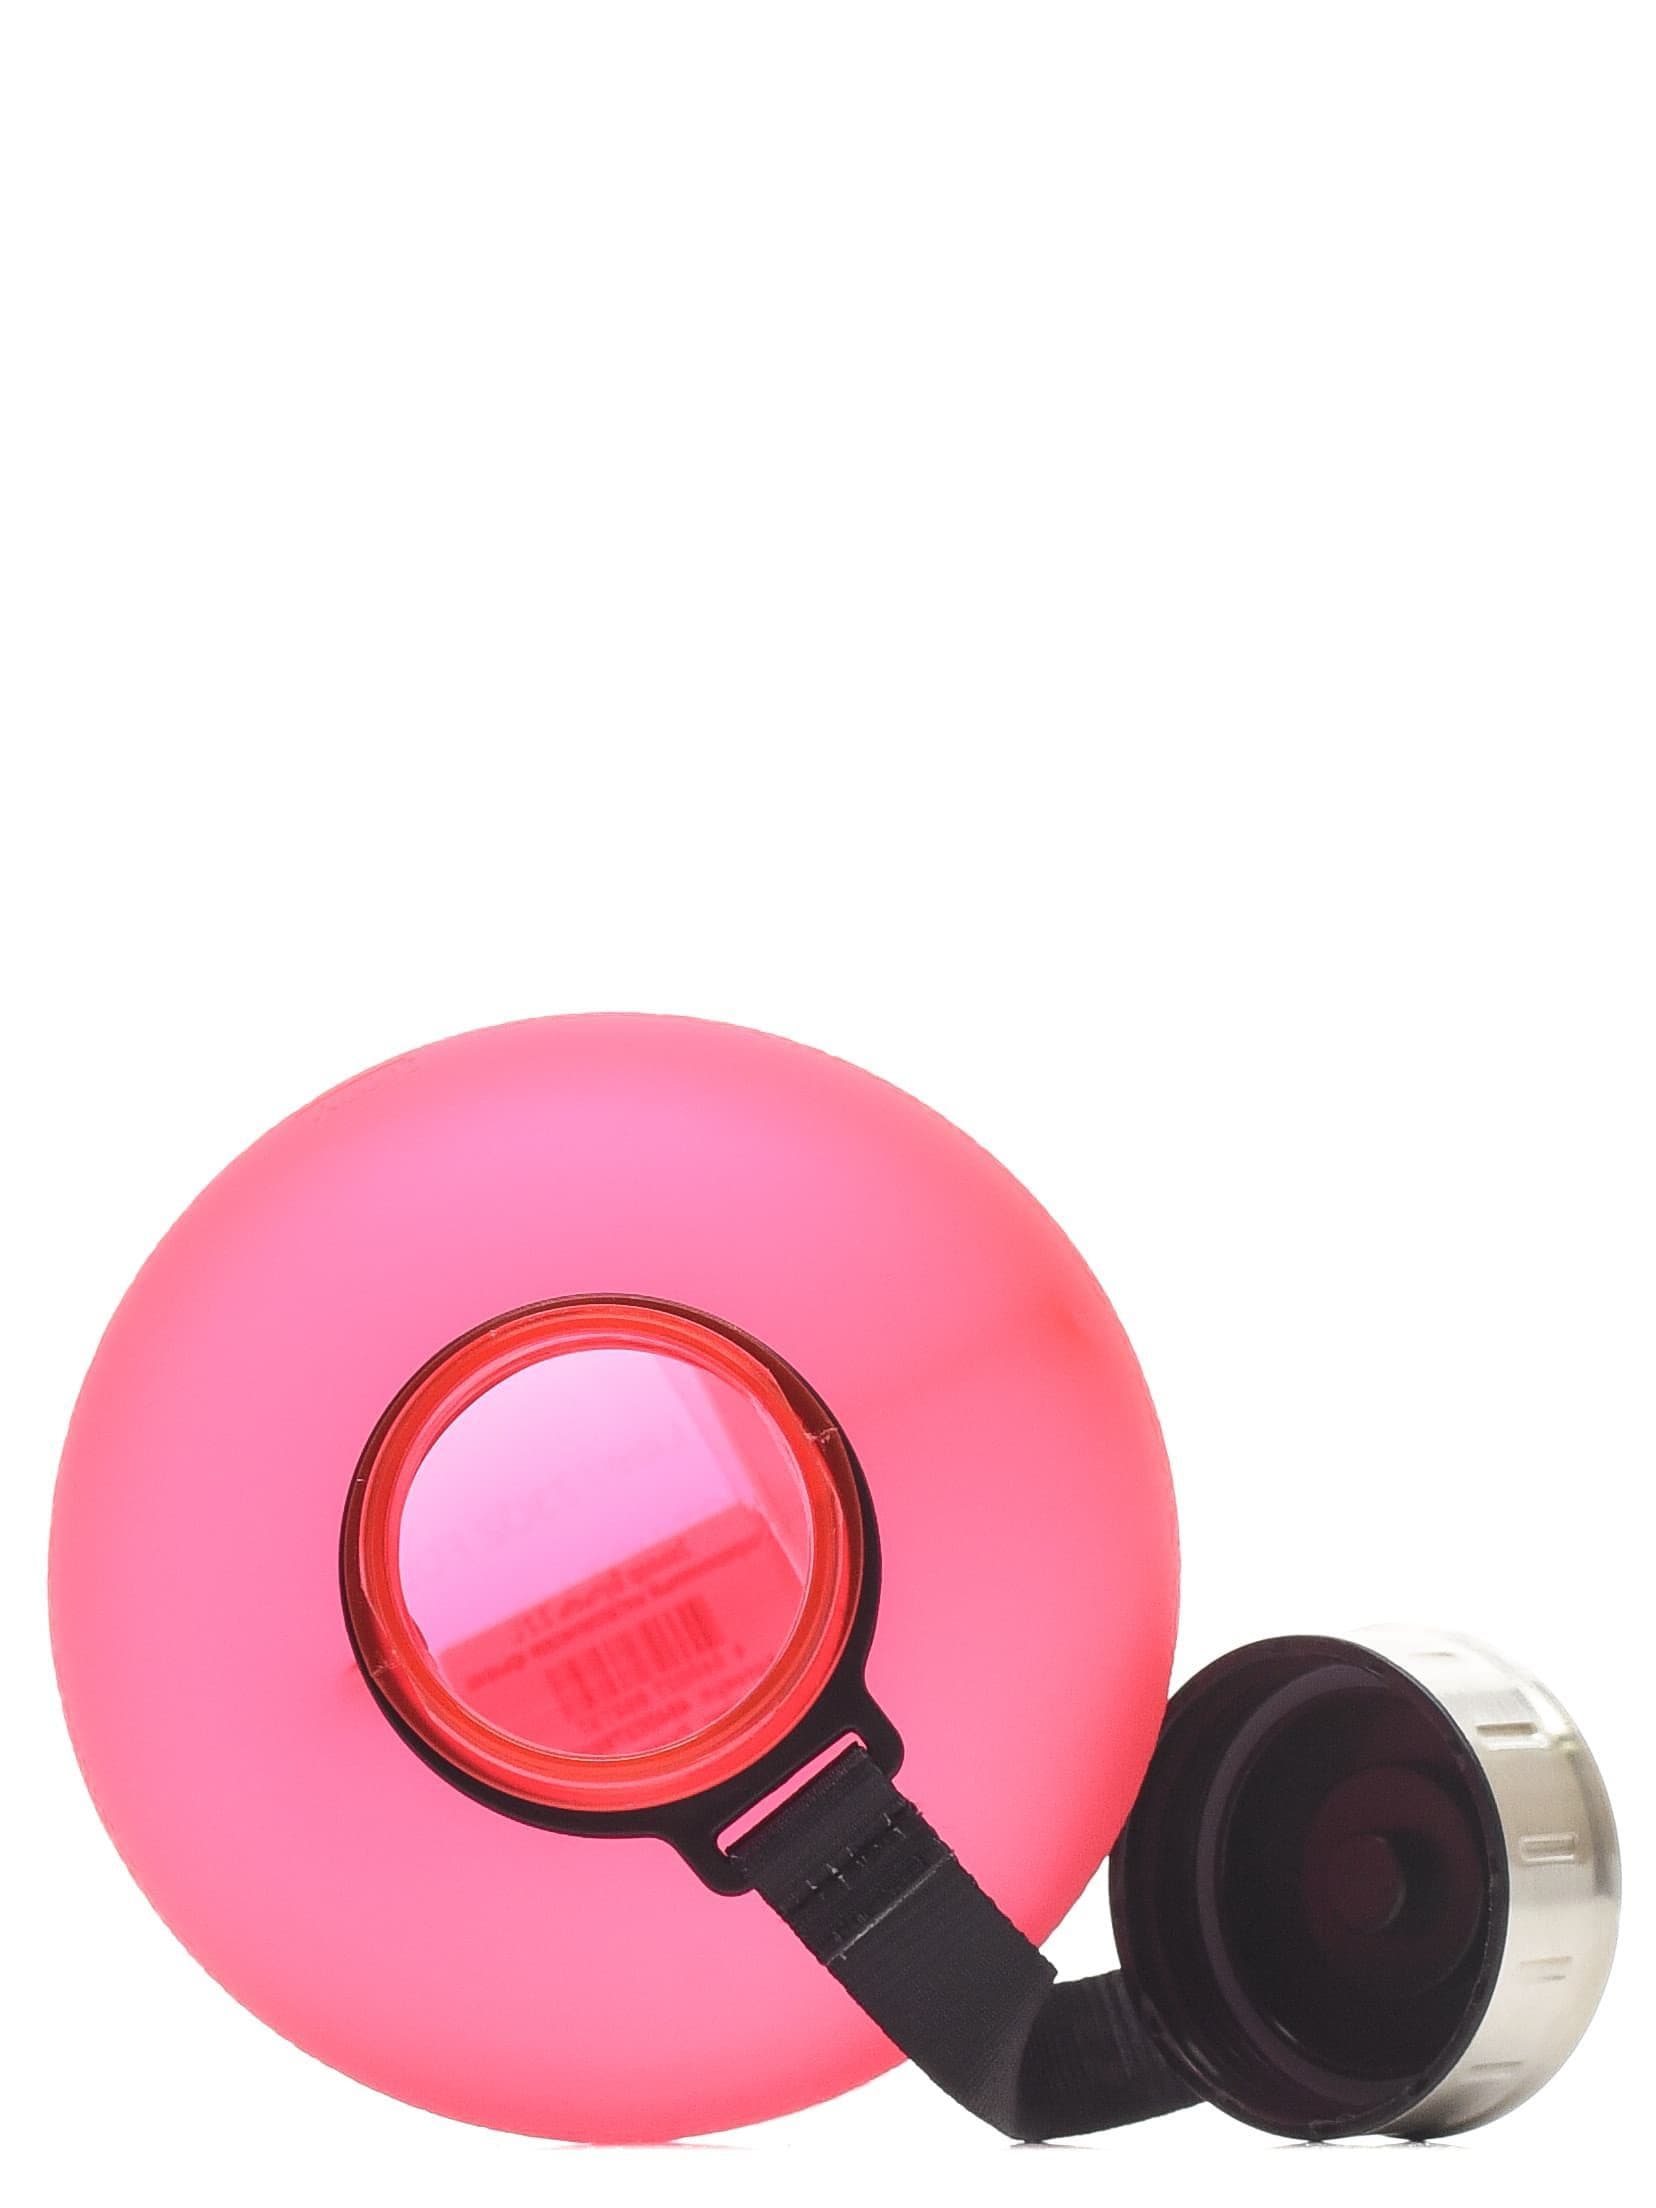 2scoop Бутыль 2.2 L прорезиненный металлическая крышка (Розовый) фото